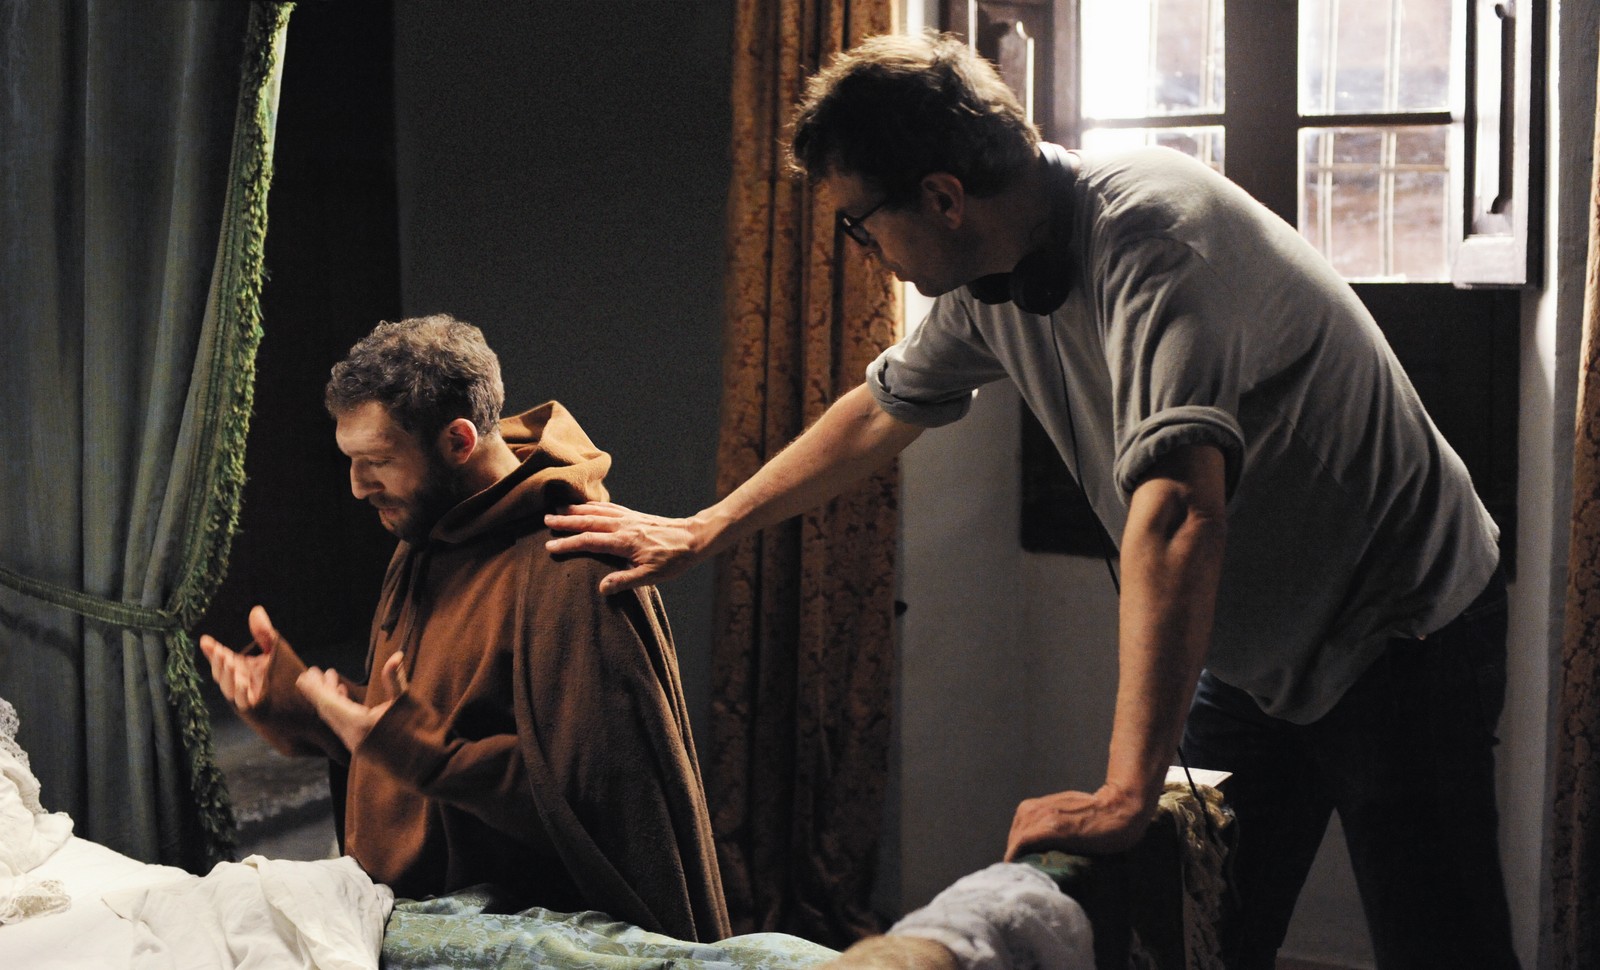 //www.occitanie-films.netMoine (Vincent Cassel) agenouillé au pied d'un lit, priant. Un homme lui pose la main sur l'épaule